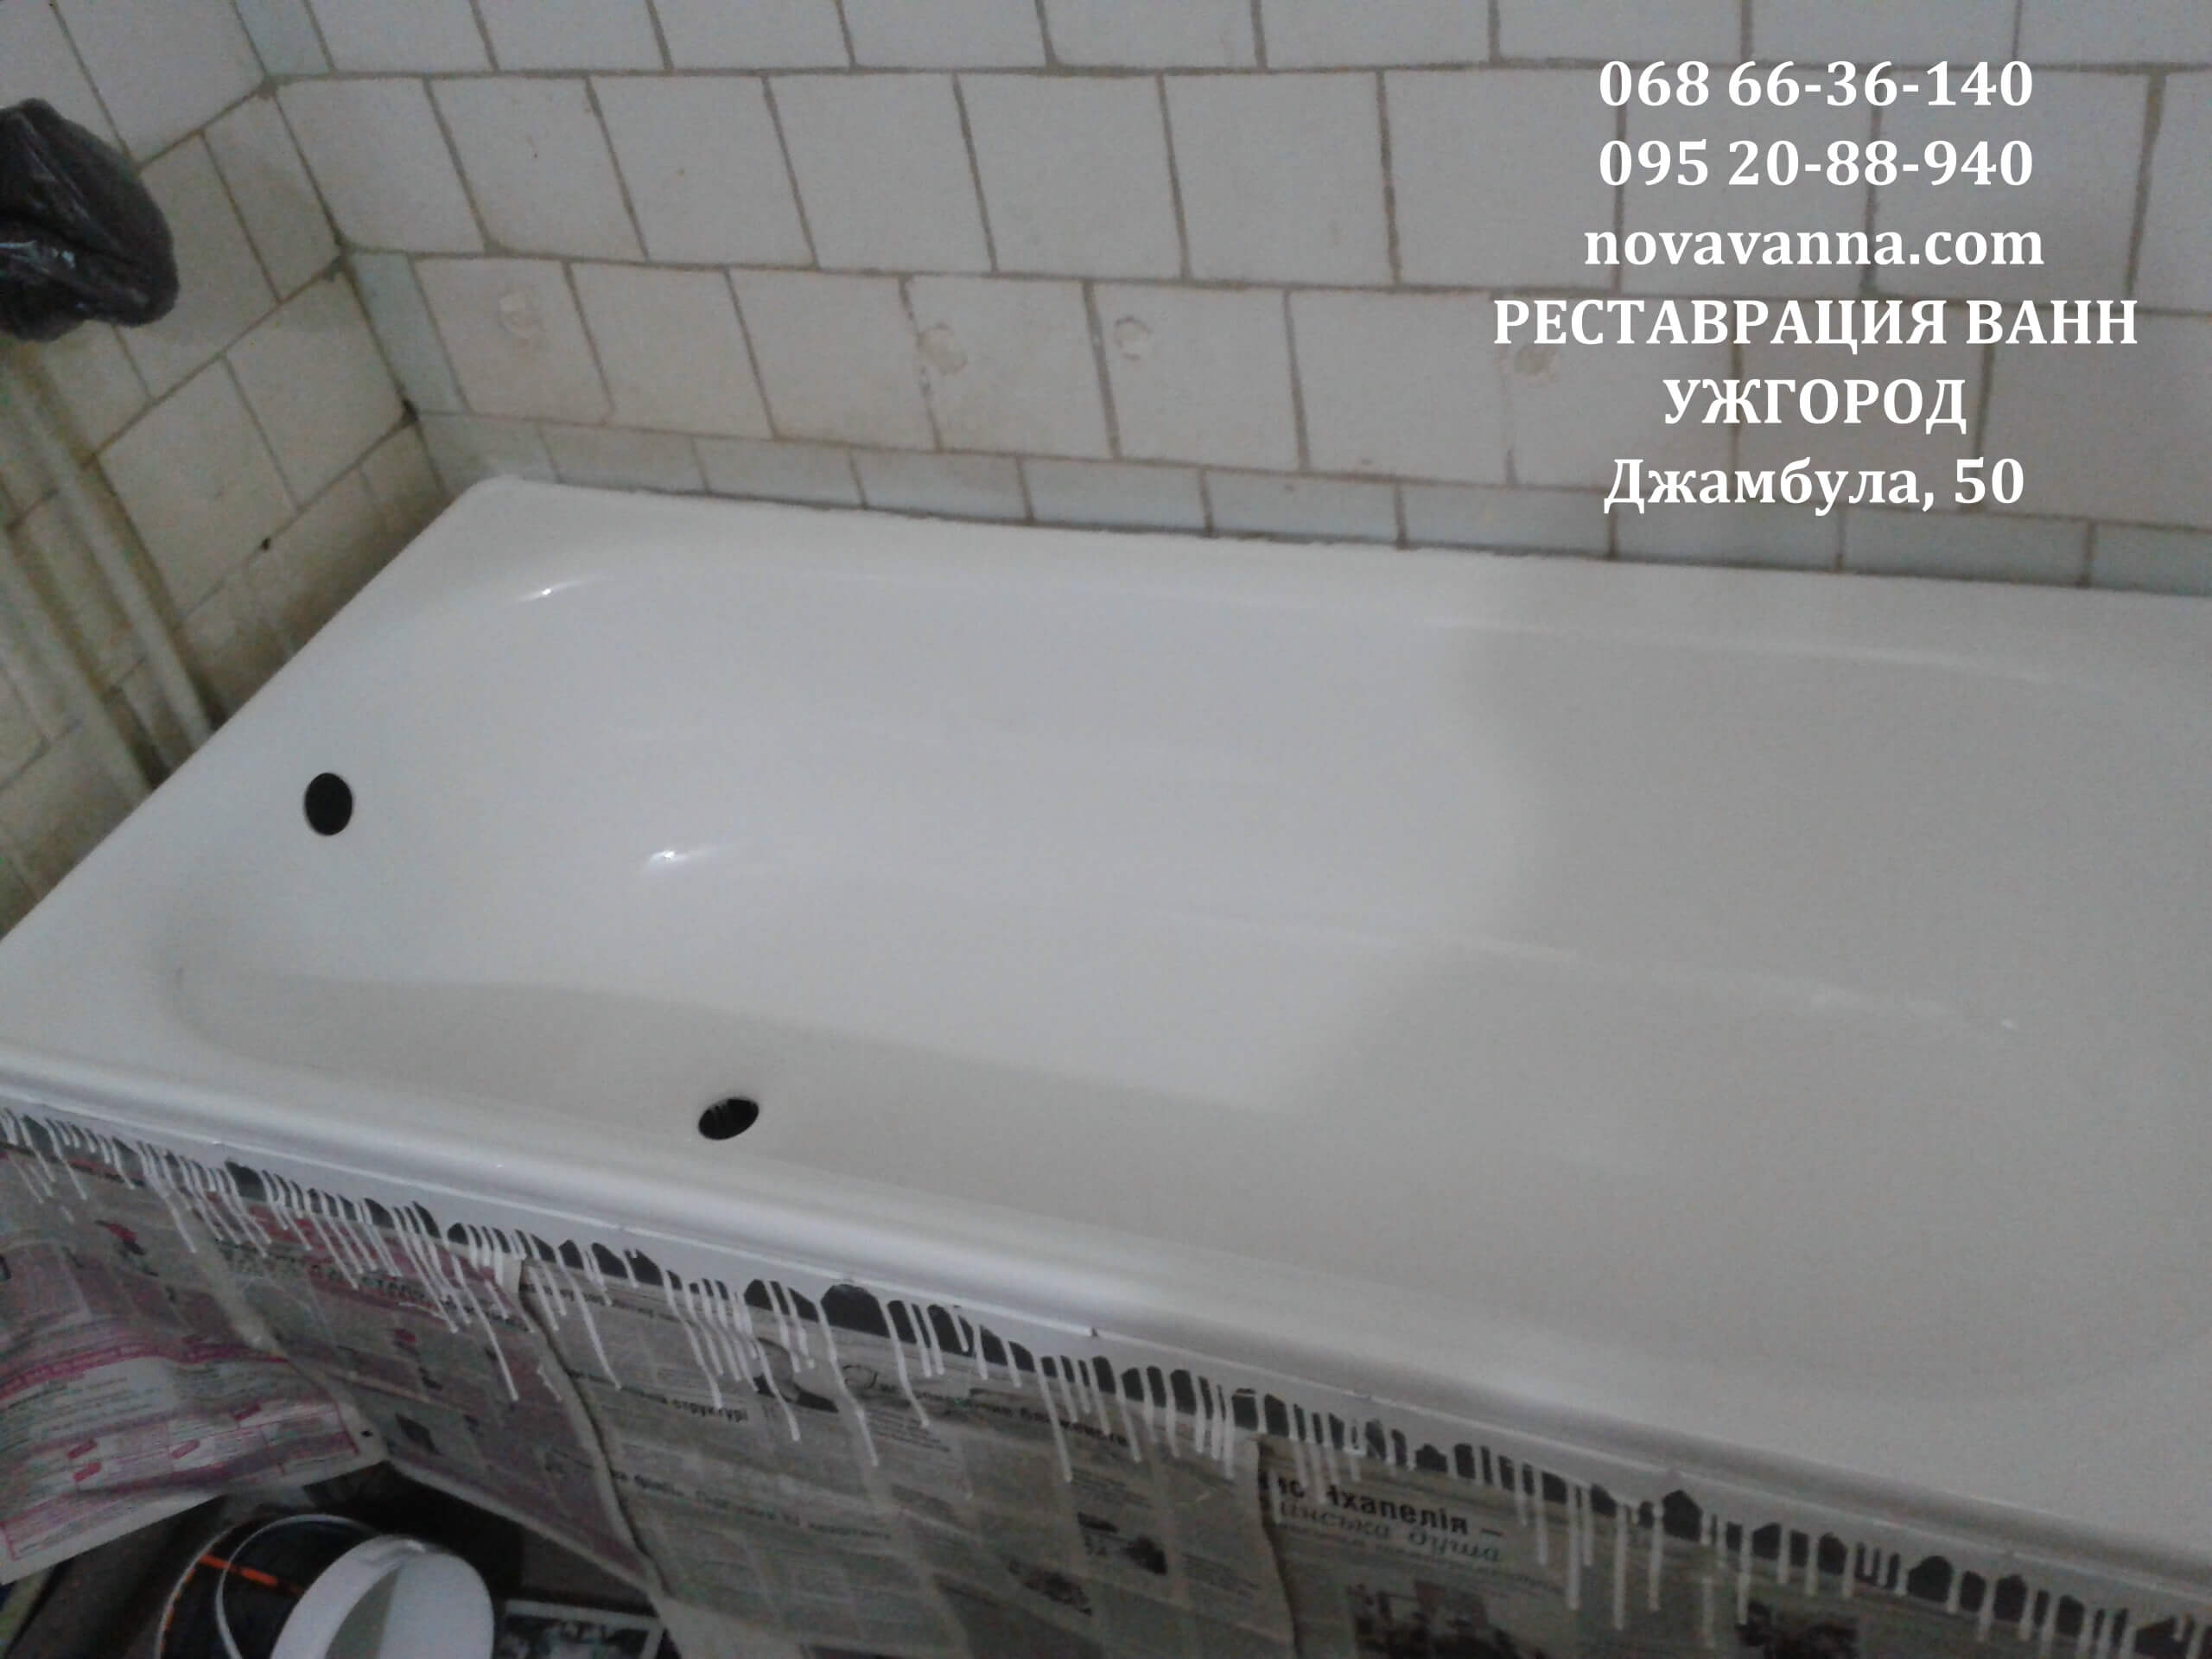 Реставрация ванн Ужгород